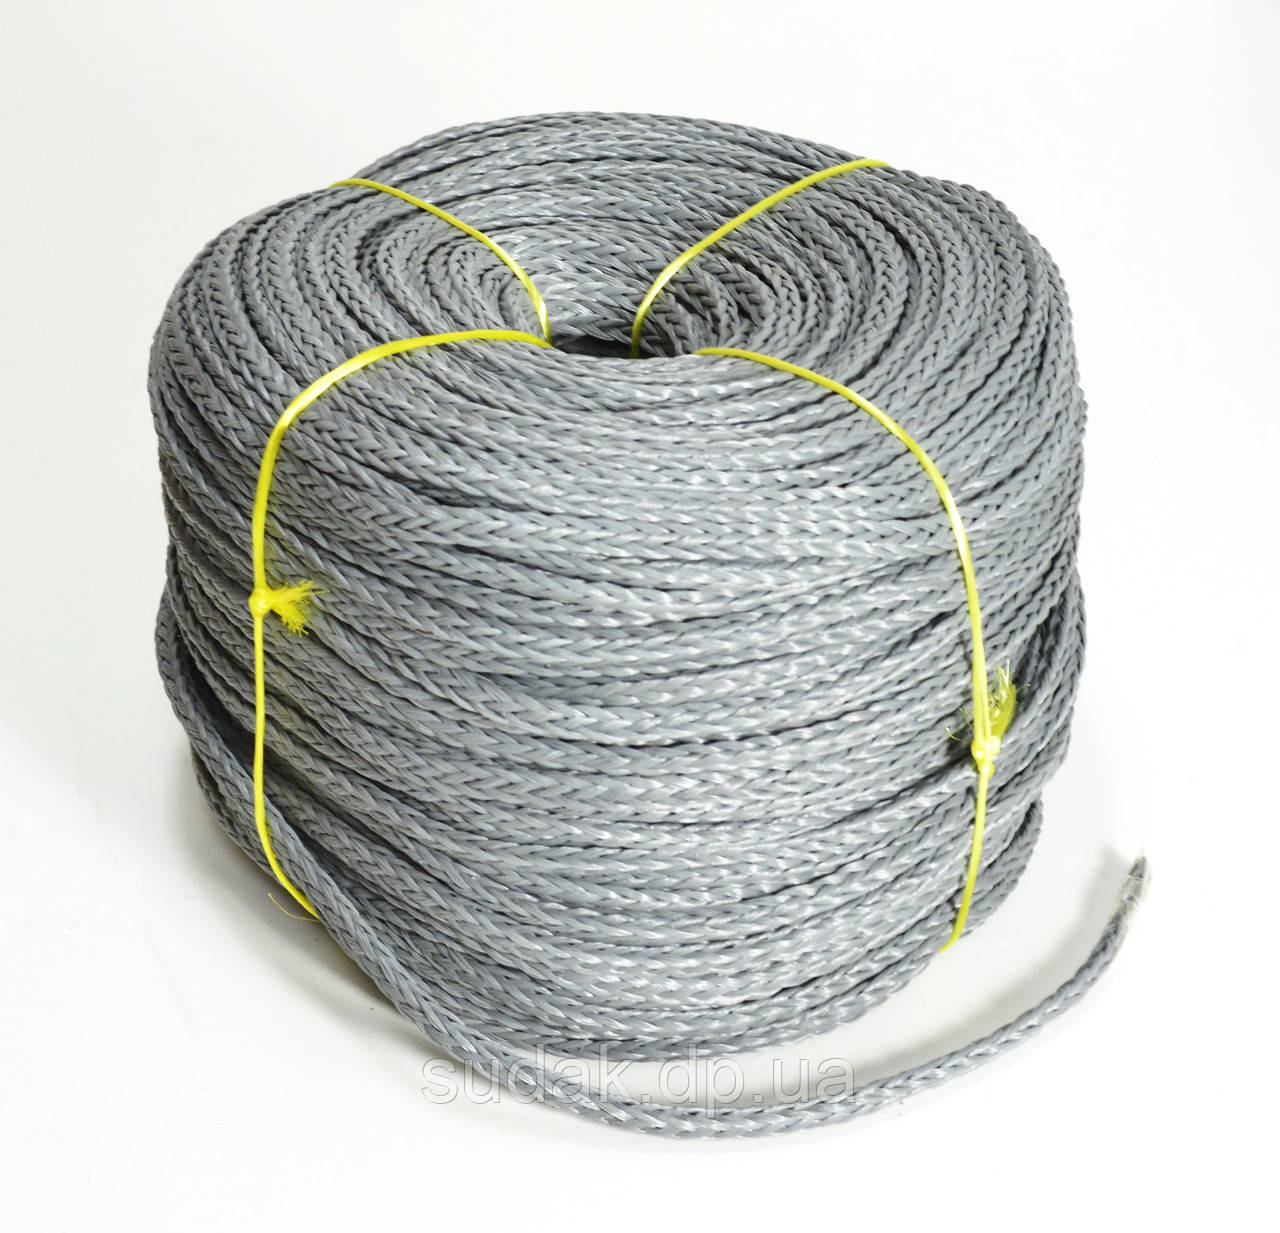 Мотузка нетонна сіра, 12 мм, 200 м 